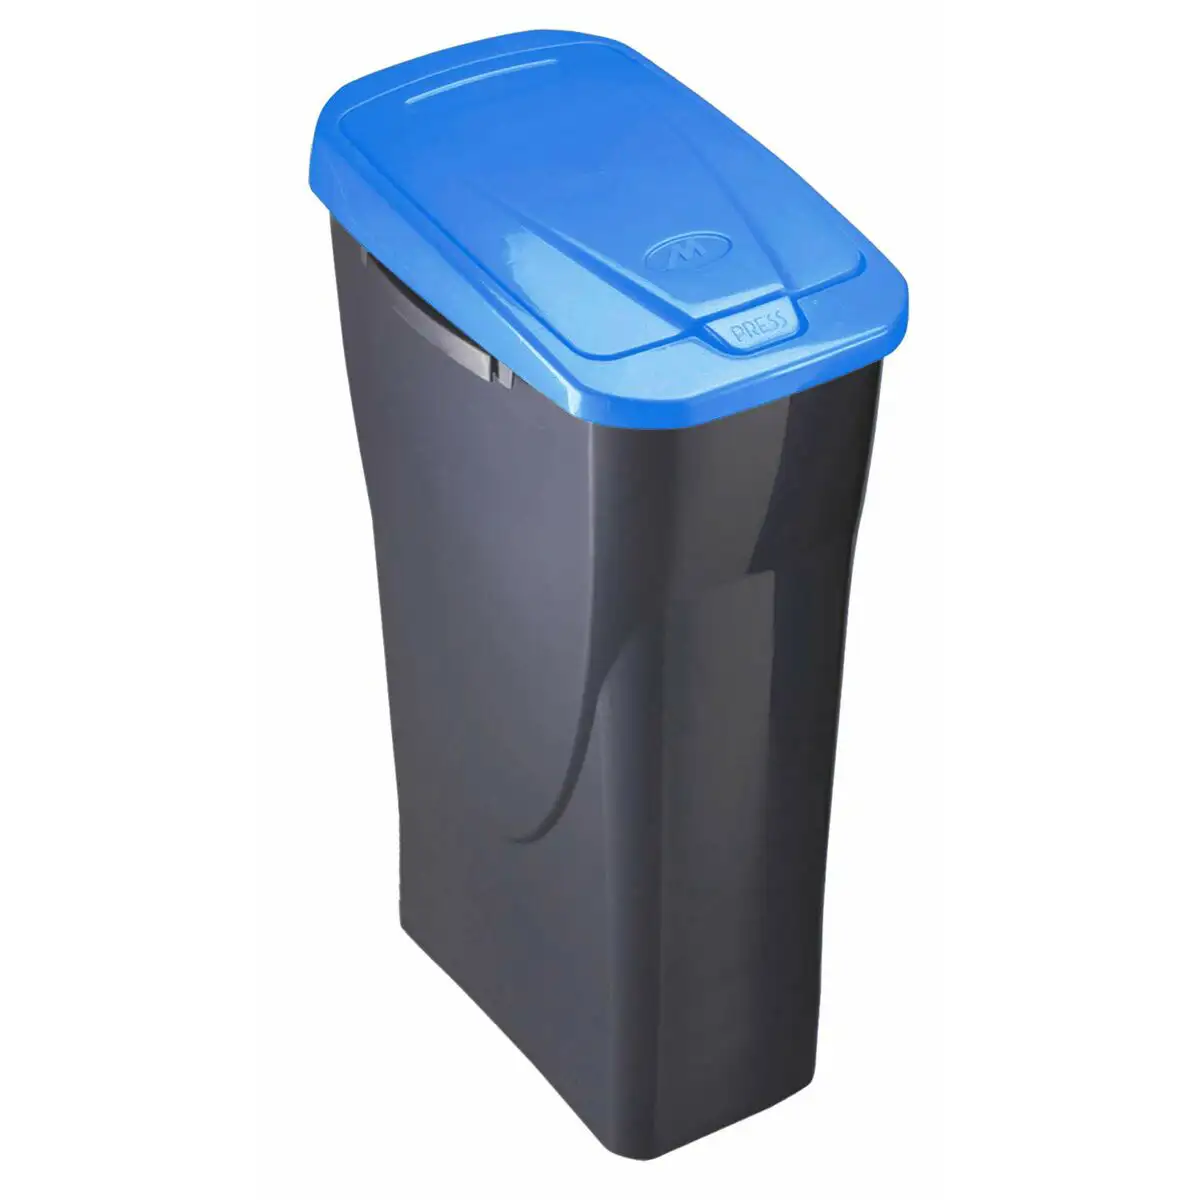 Poubelle de recyclage mondex ecobin bleu avec couvercle 25 l_1848. Découvrez DIAYTAR SENEGAL - Là où le Choix Rencontre la Qualité. Parcourez notre gamme diversifiée et choisissez parmi des produits conçus pour exceller dans tous les aspects de votre vie.